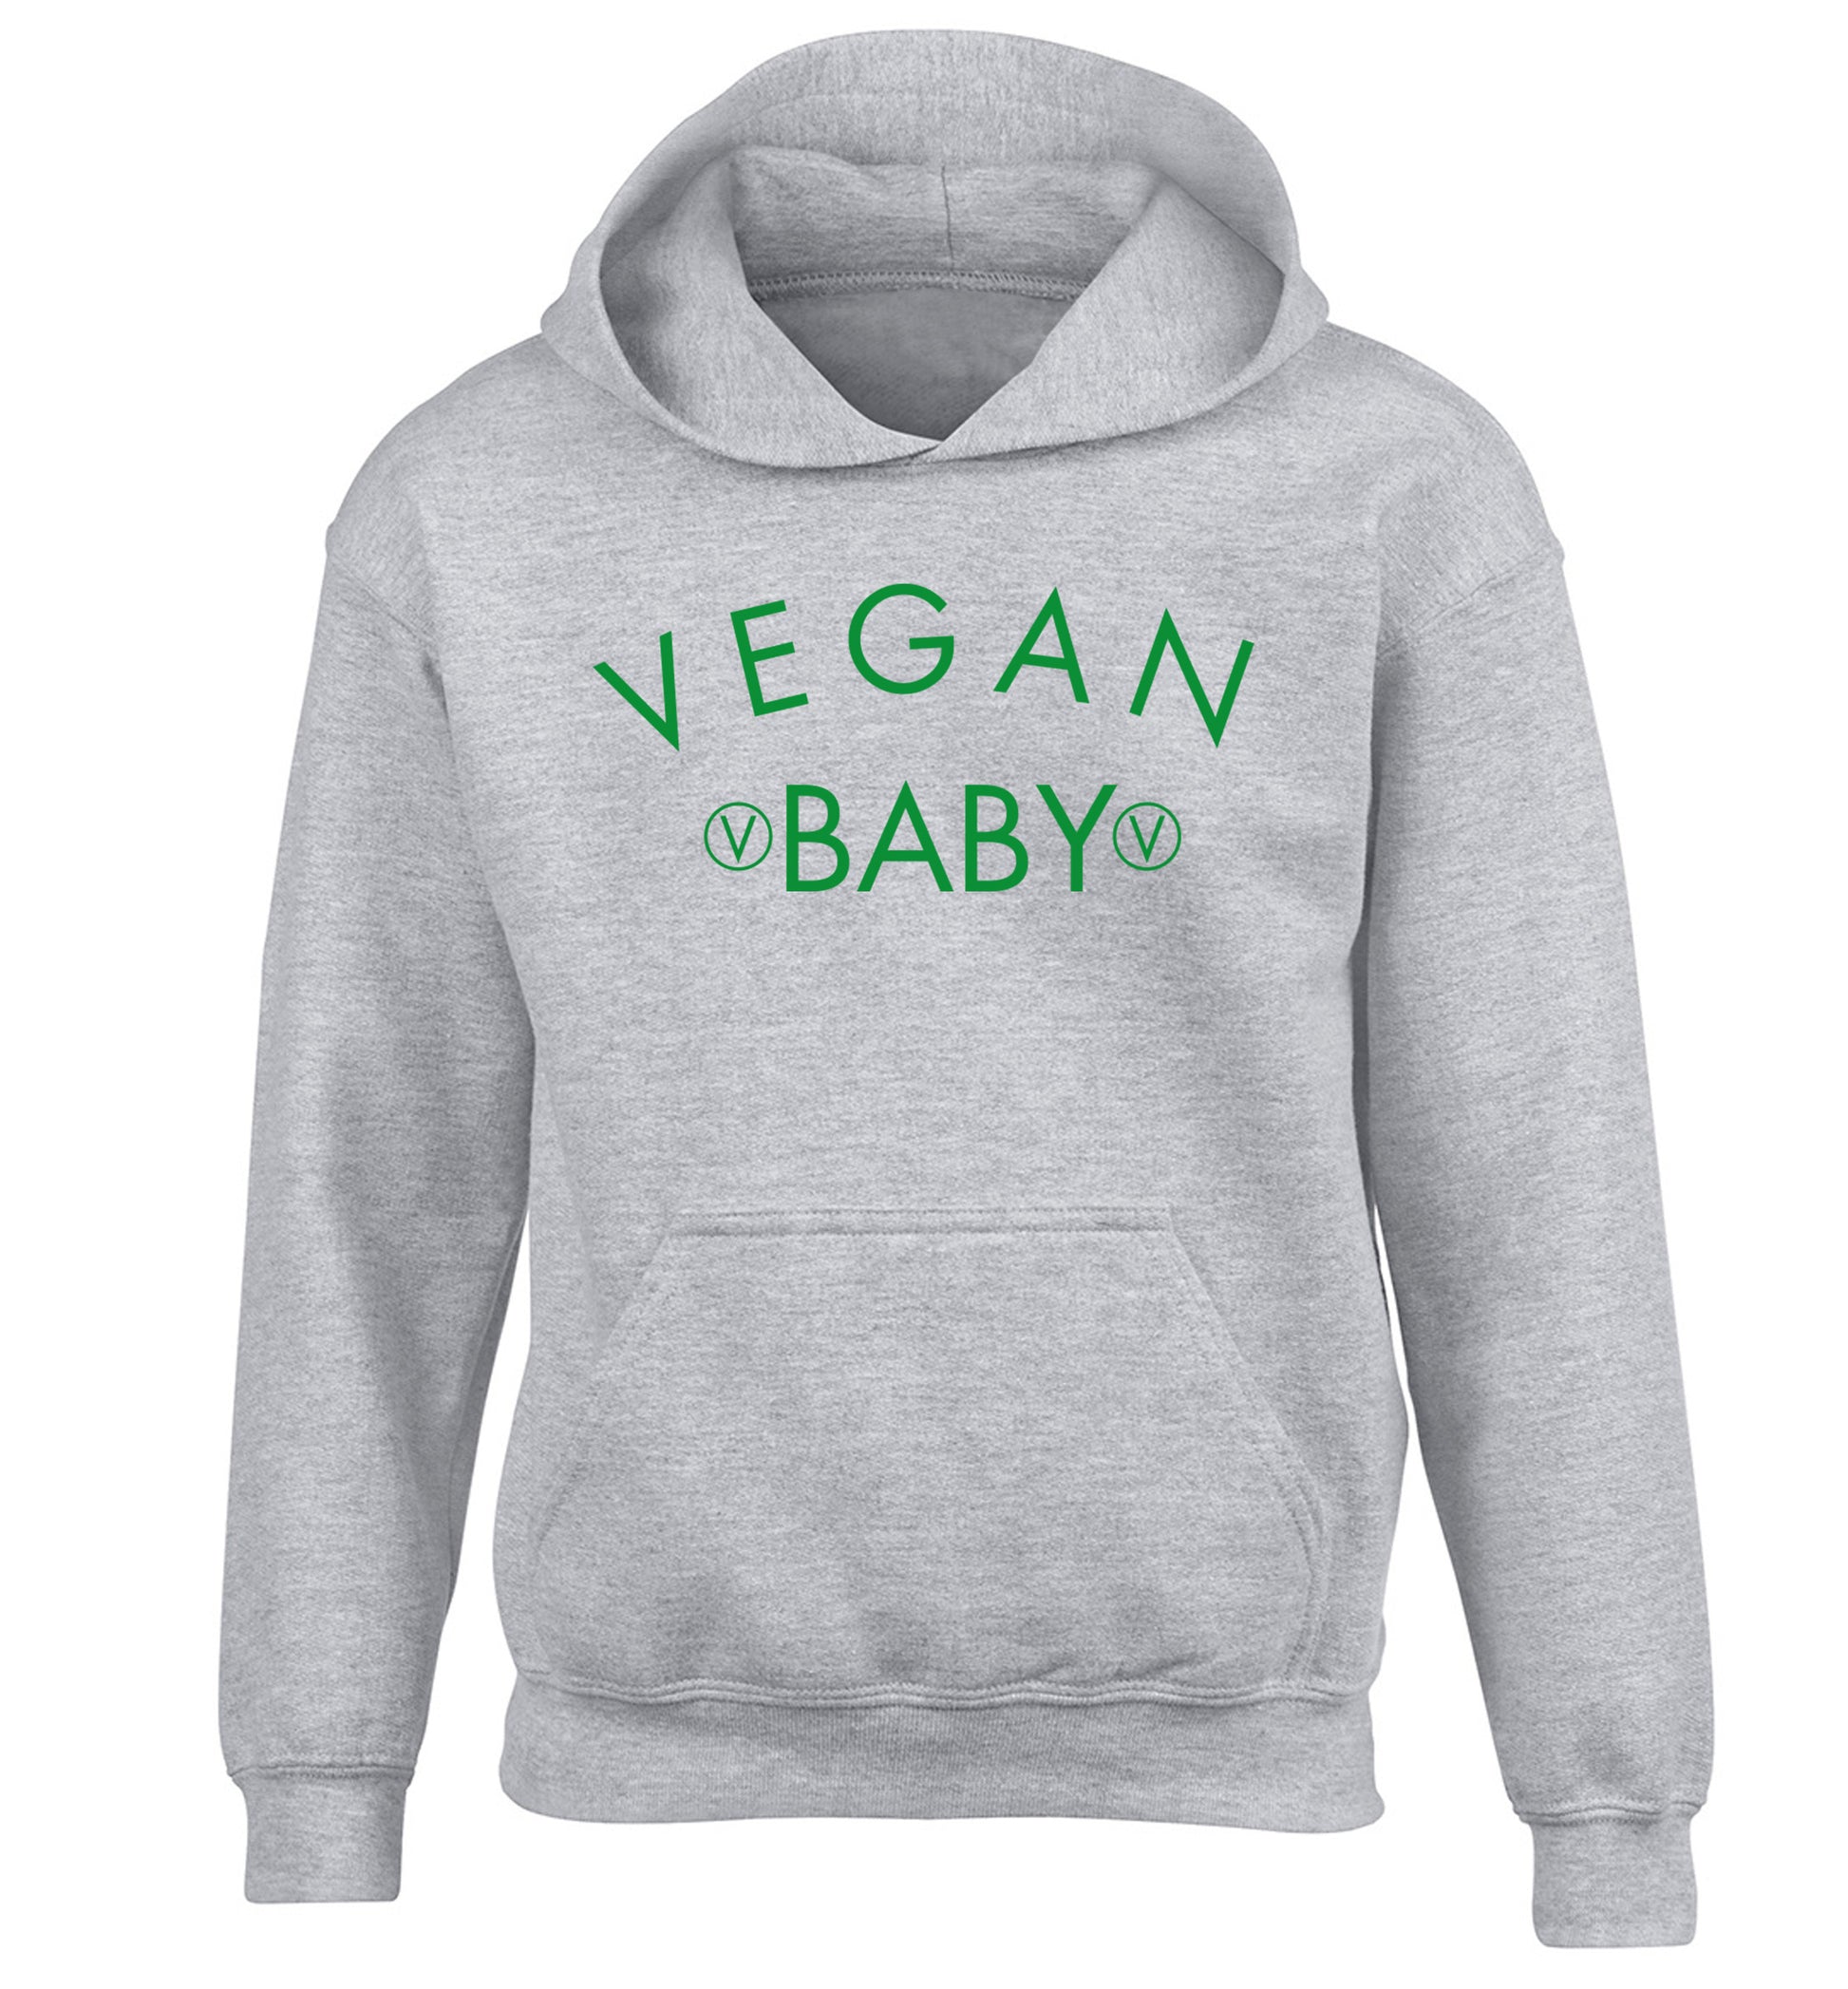 Vegan baby children's grey hoodie 12-14 Years